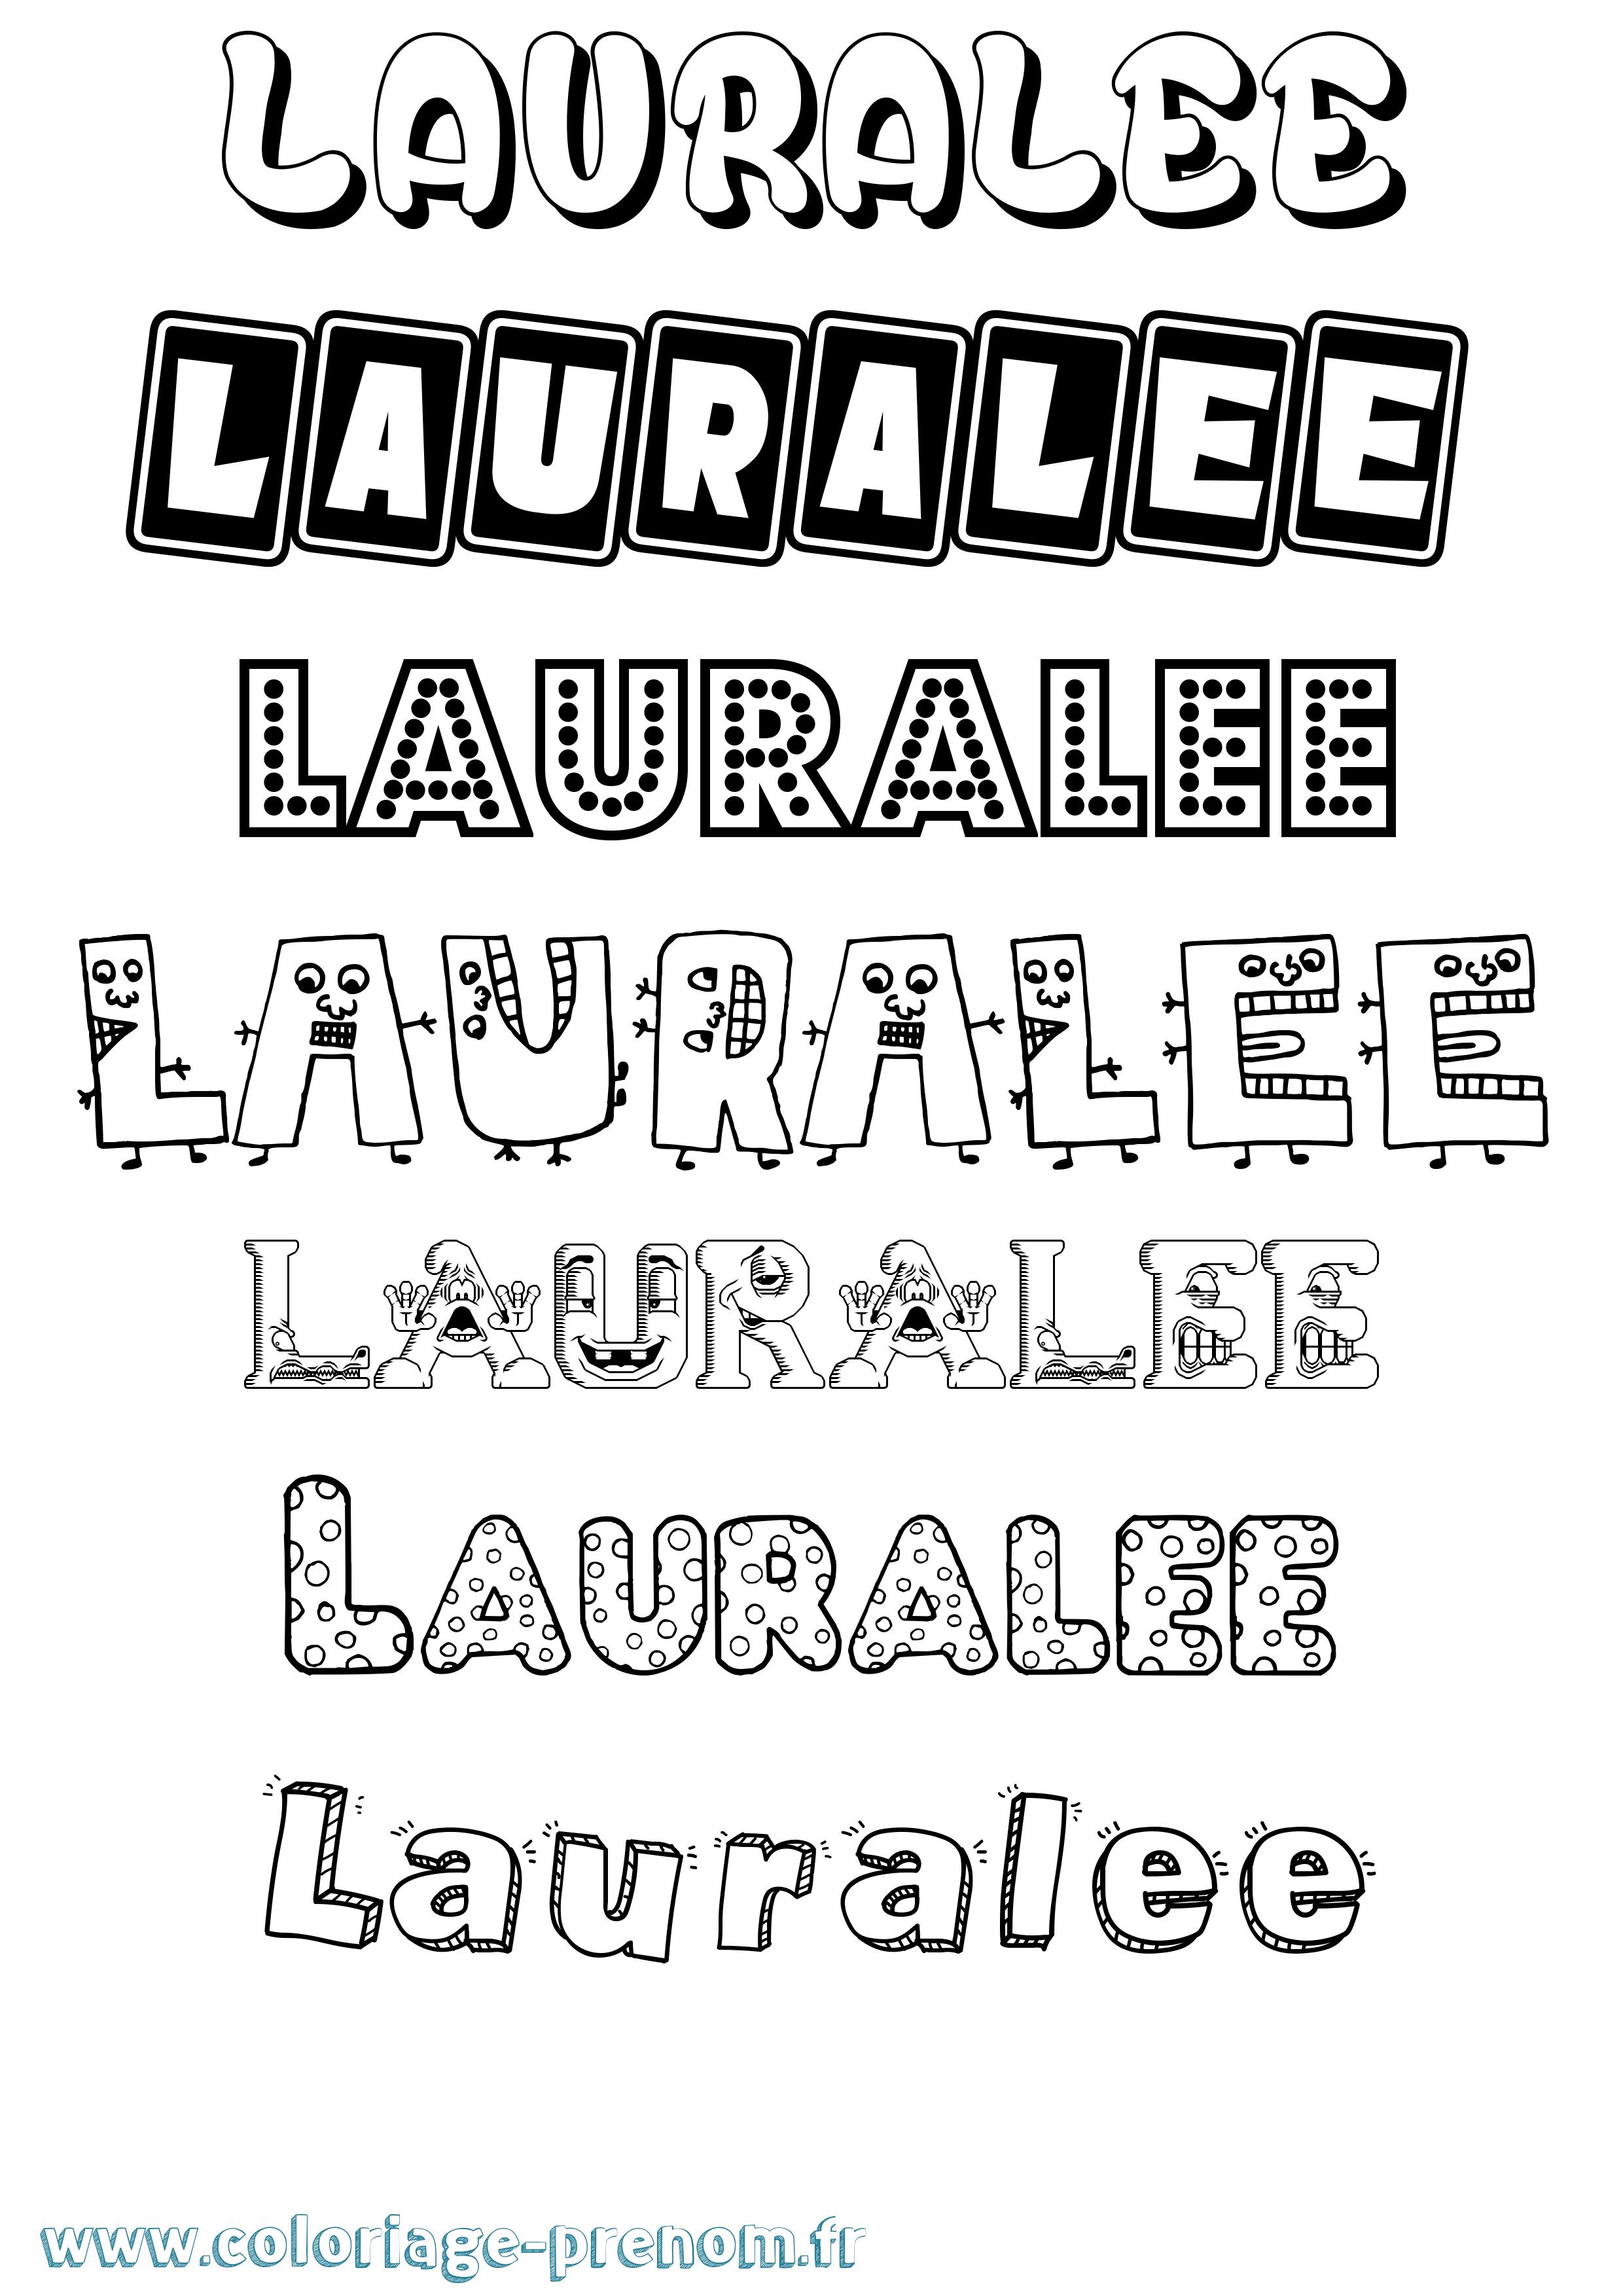 Coloriage prénom Lauralee Fun